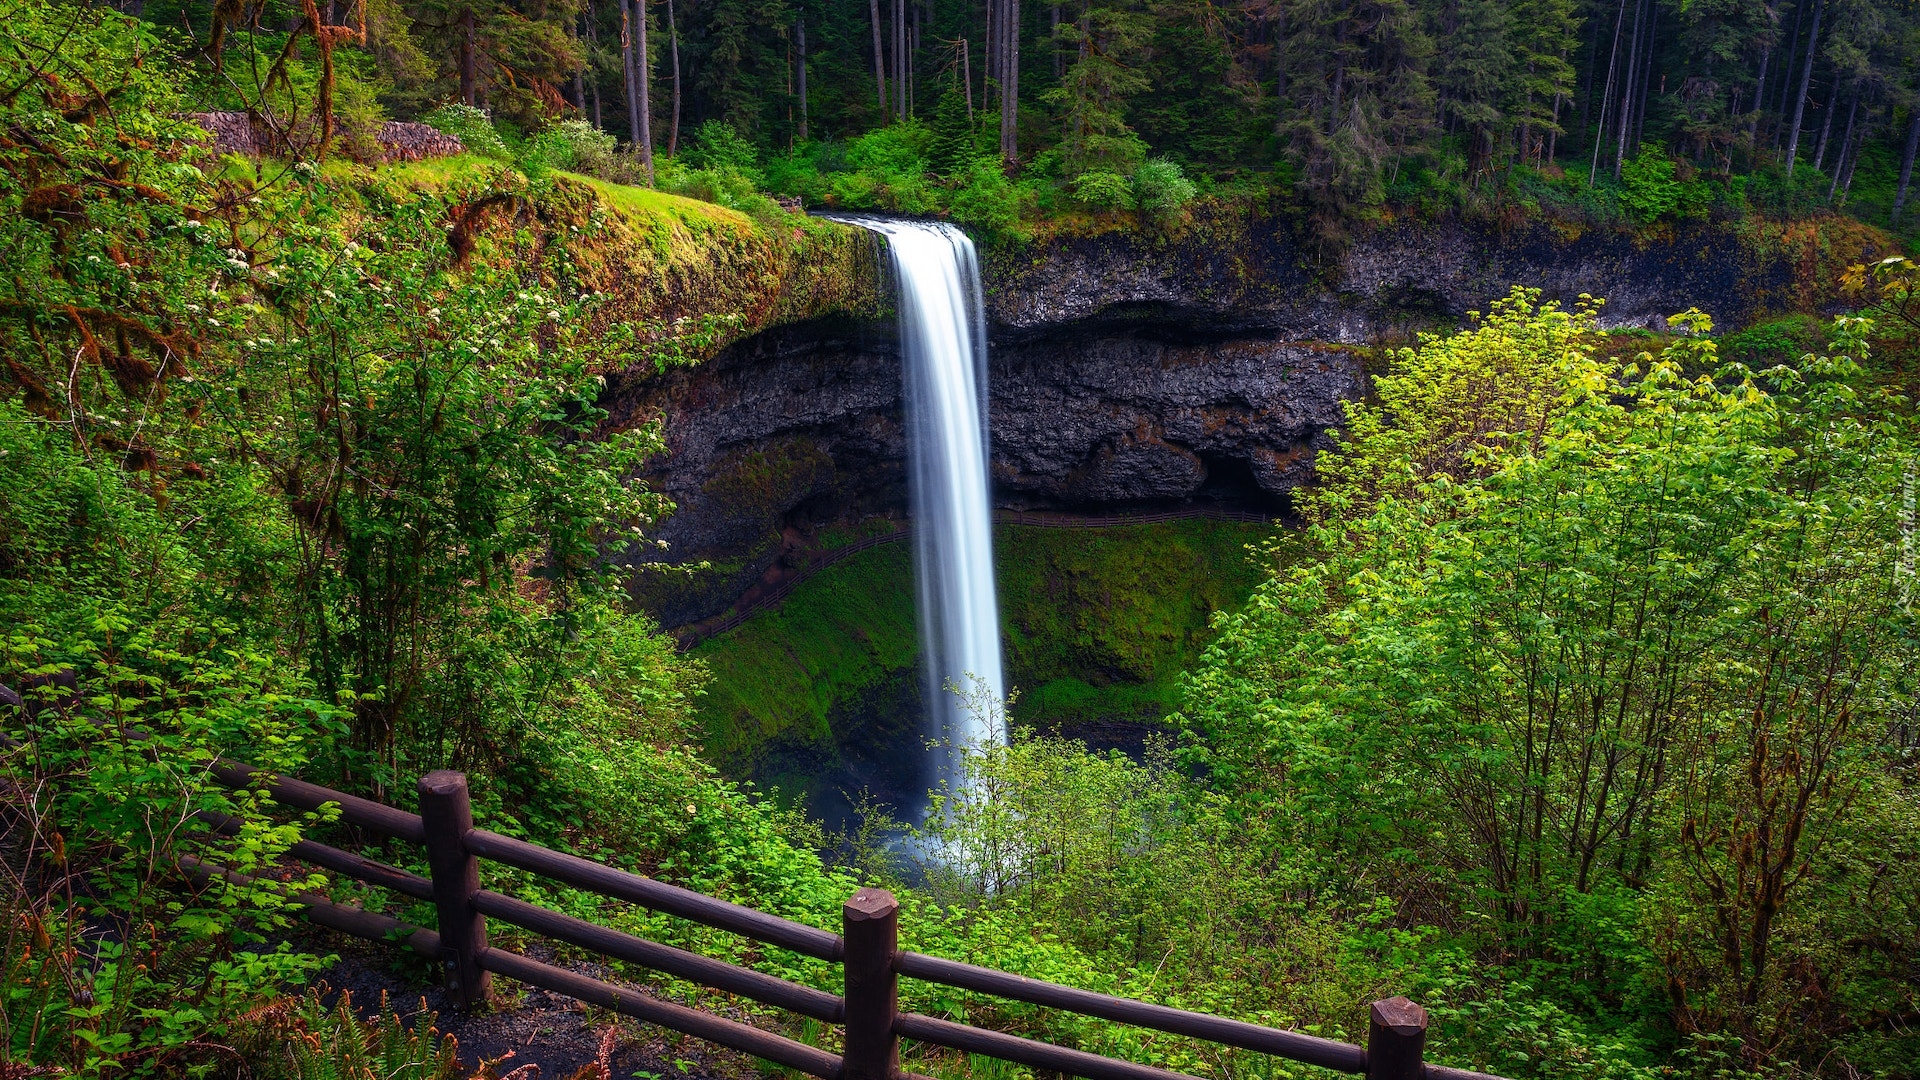 Wodospad, South Falls, Skały, Drzewa, Ogrodzenie, Park stanowy Silver Falls, Stan Oregon, Stany Zjednoczone